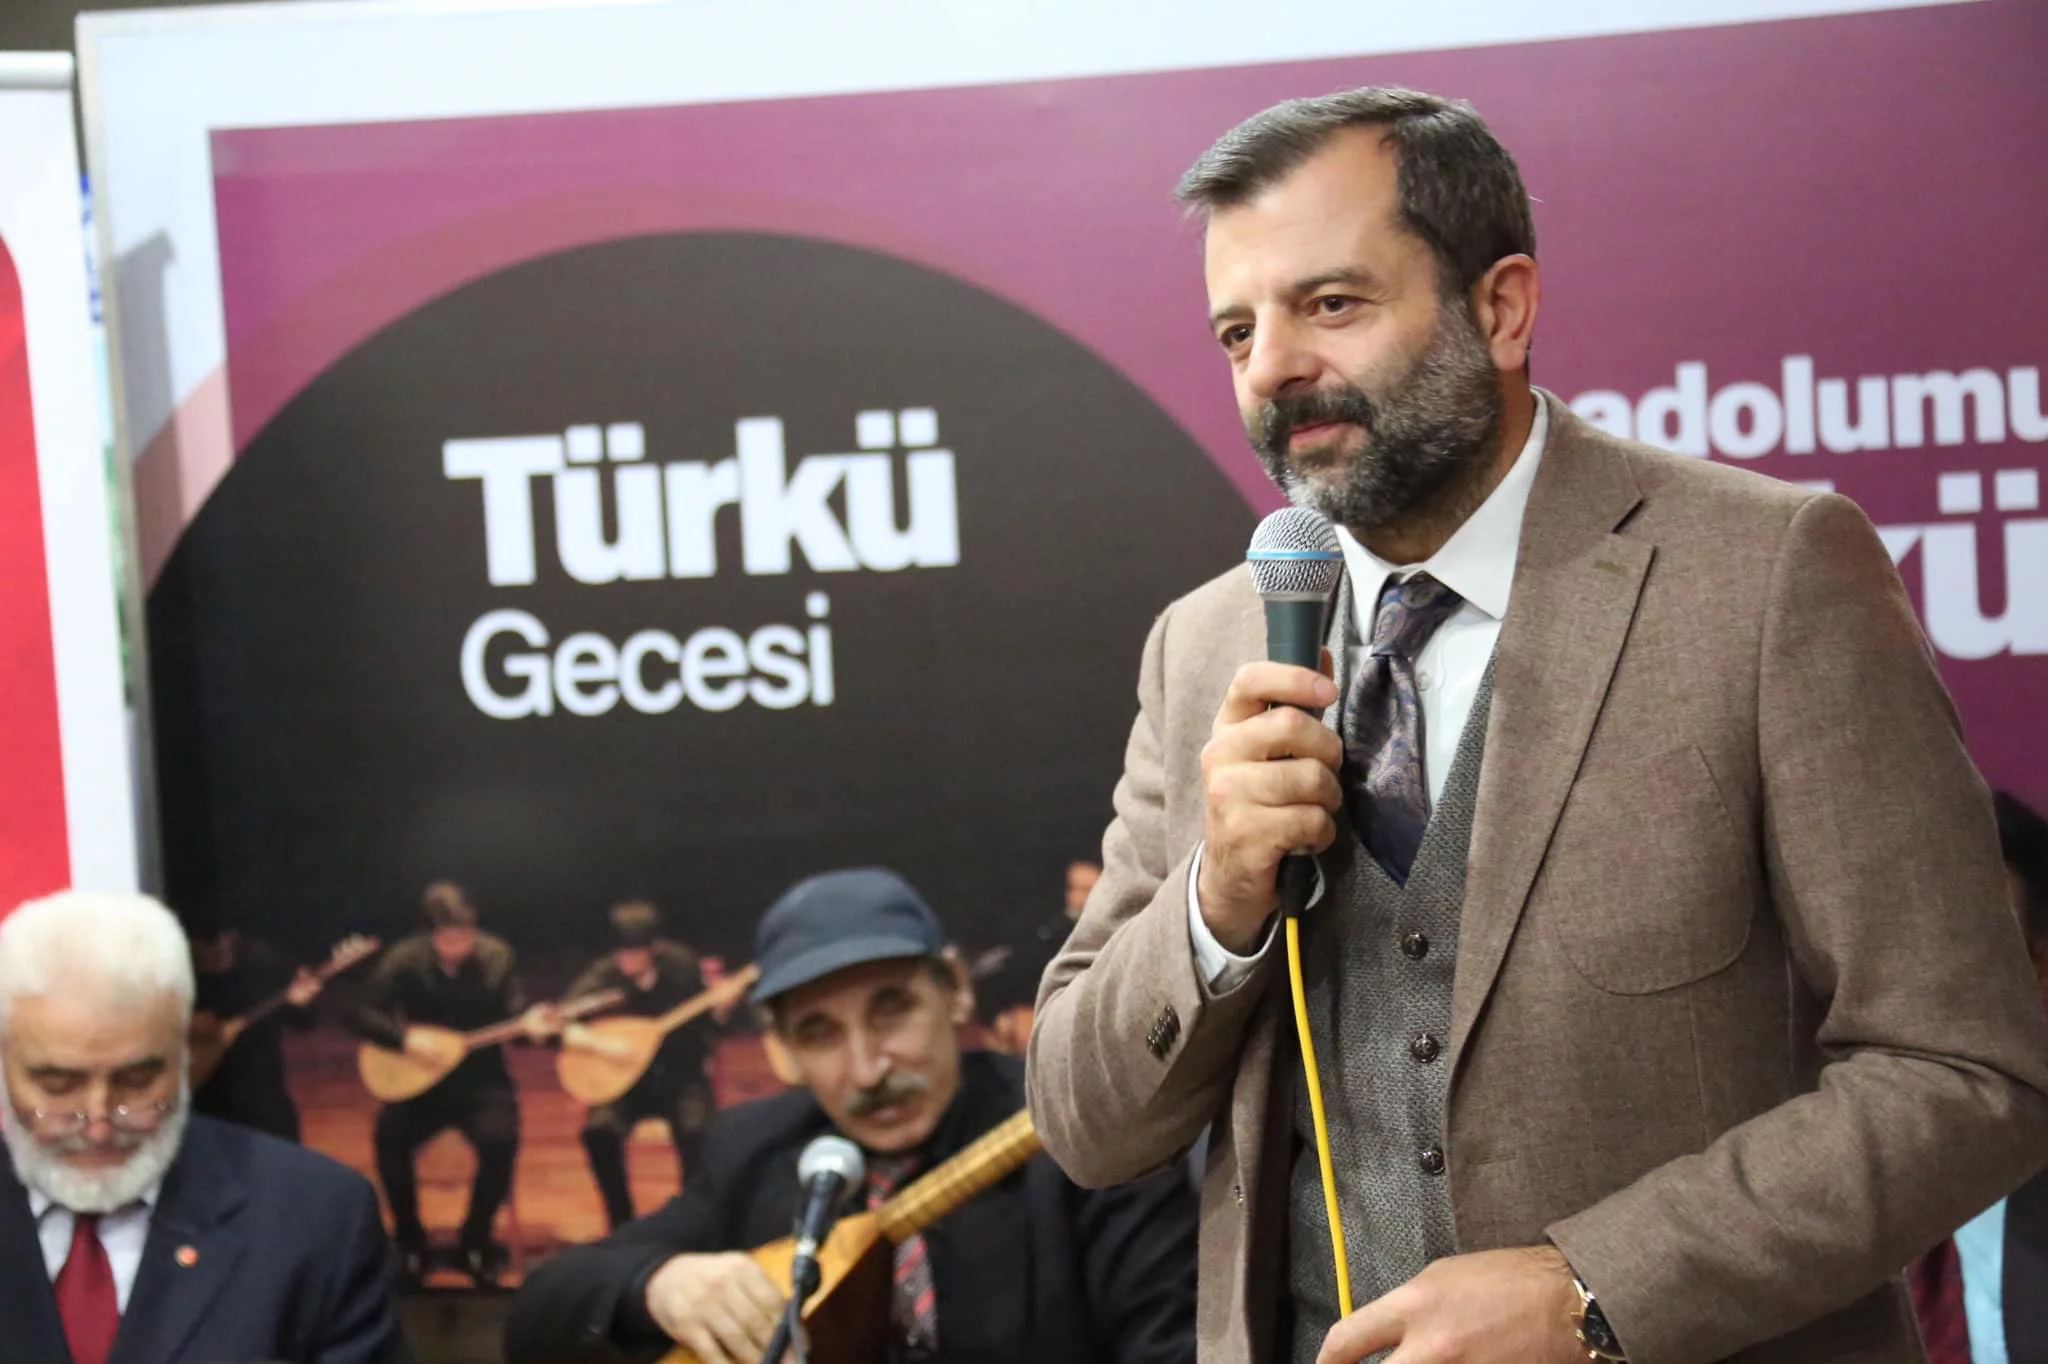 Başkan Mustafa Işık “Türkülerimiz, manevi zenginliklerimizi yaşatır”